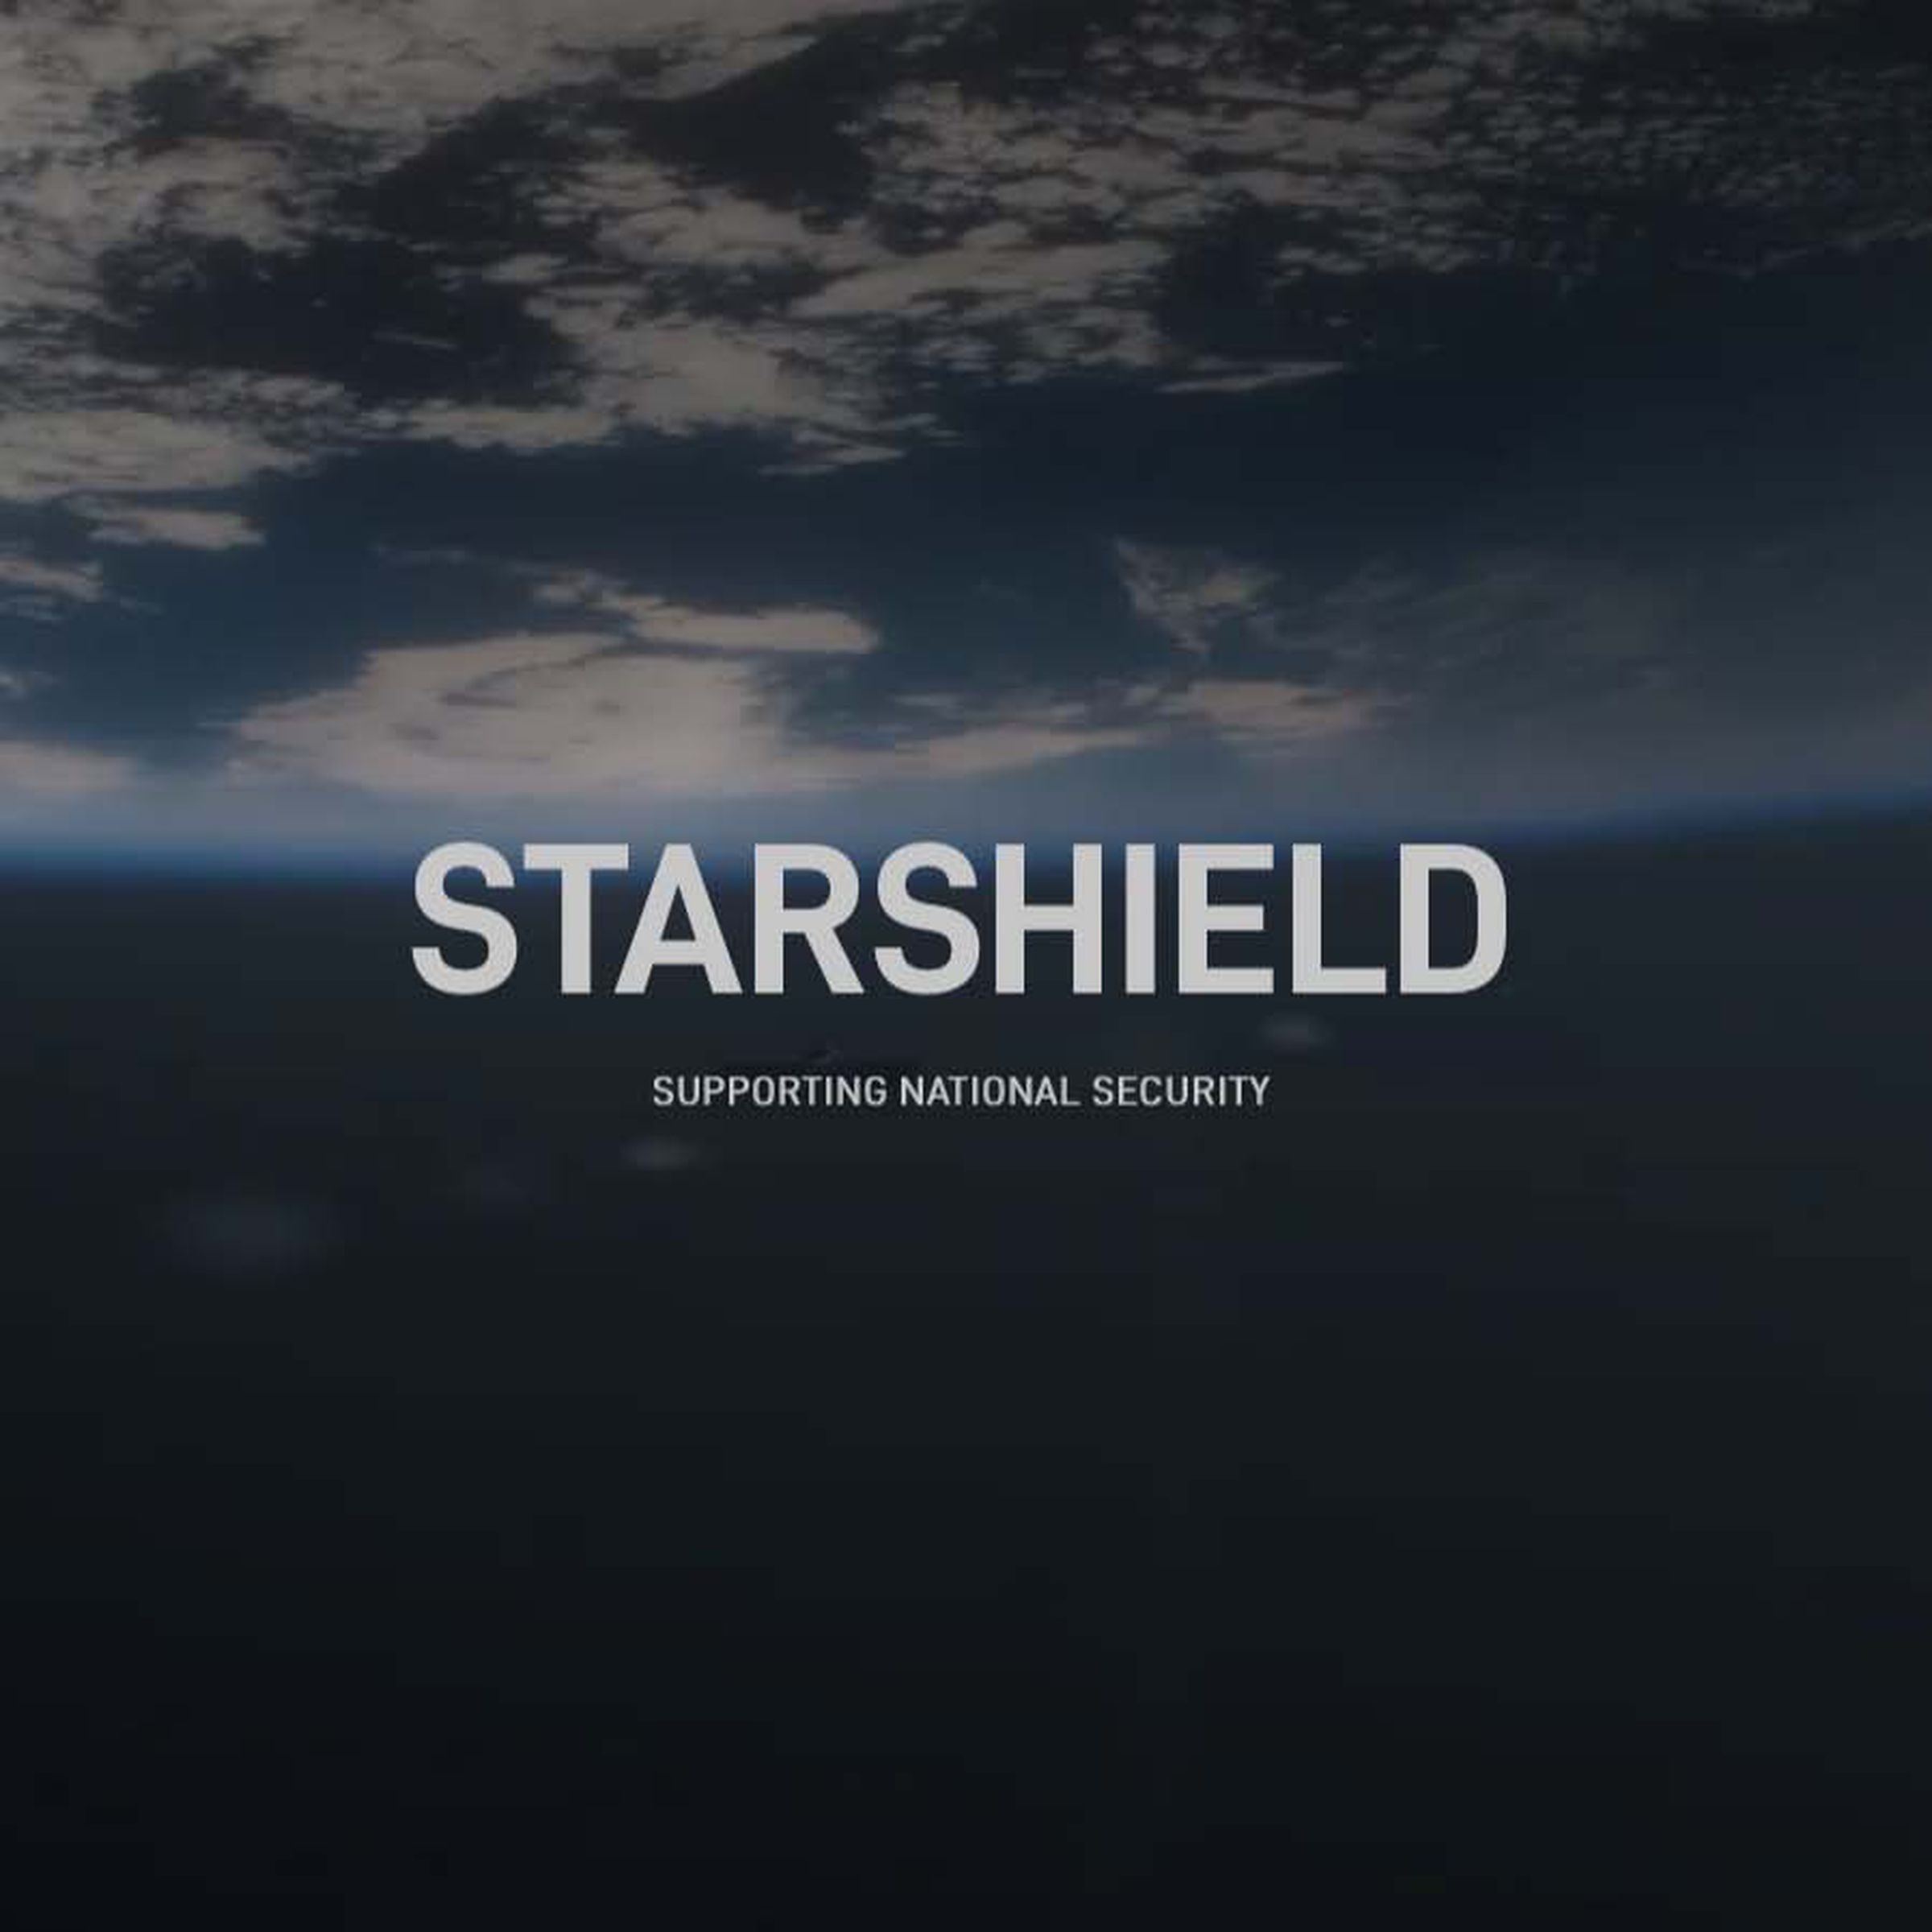 The Starshield logo.